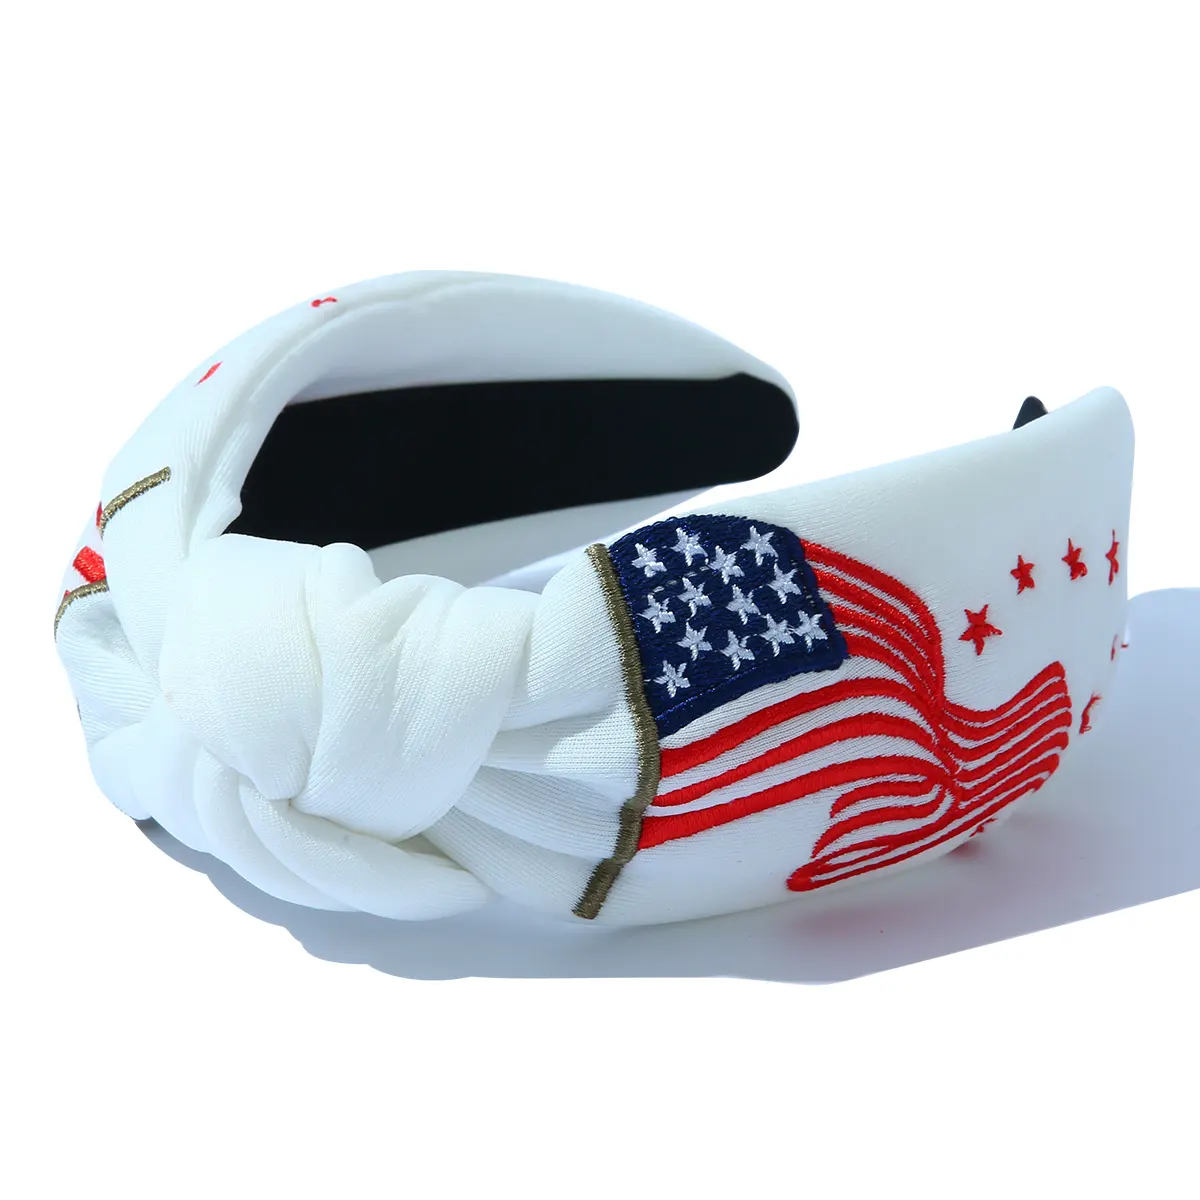 कस्टम सफेद अमेरिकी ध्वज कढ़ाई नॉटेड वाइड हेडबैंड फैशन हॉलिडे हेयरबैंड स्वतंत्रता दिवस बाल सहायक उपकरण